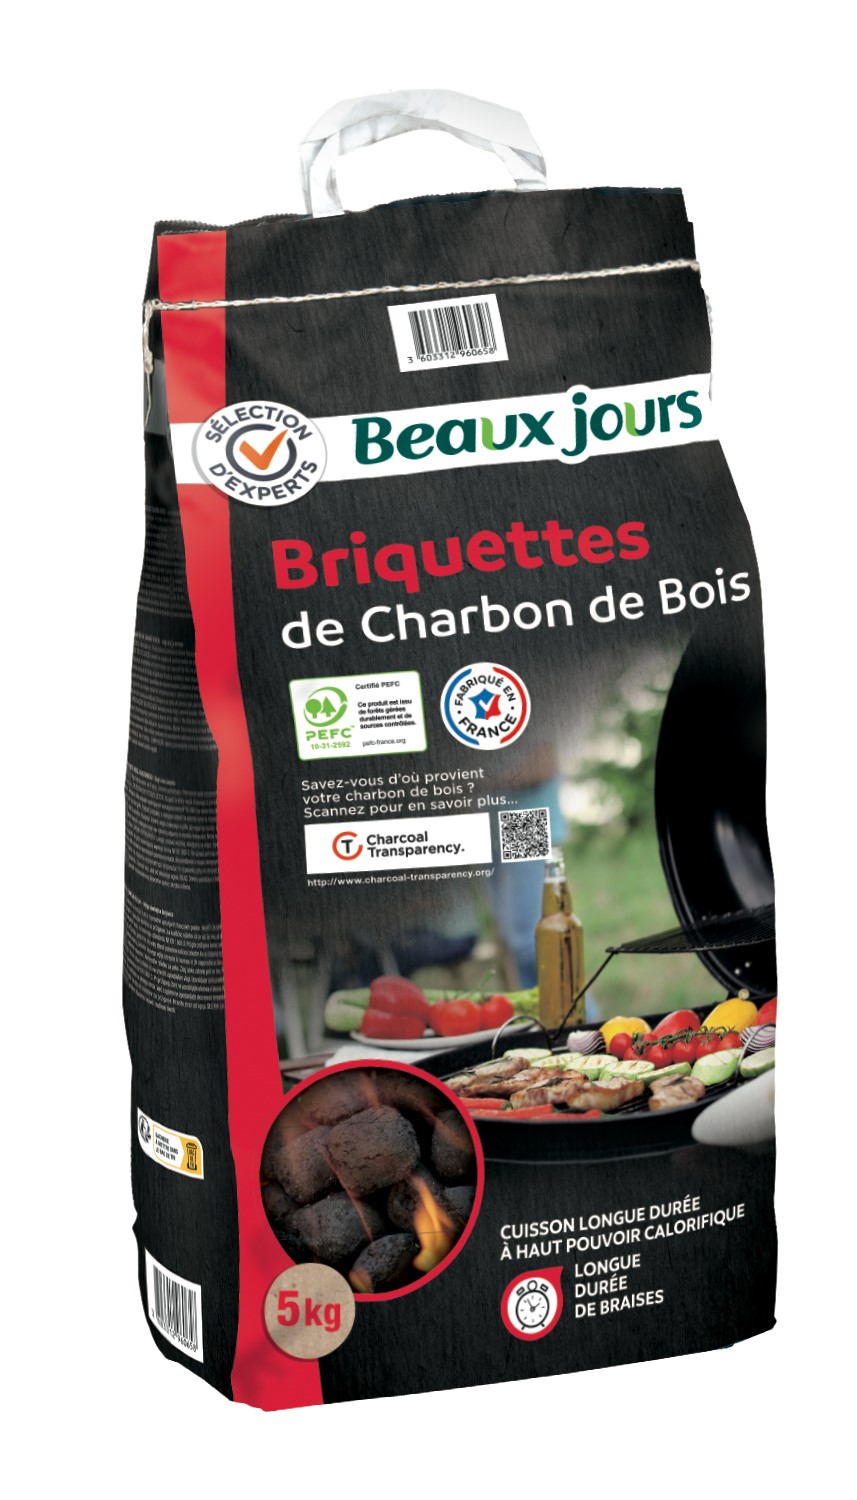 Beaux Jours – Briquettes de charbon de bois (5 Kg)